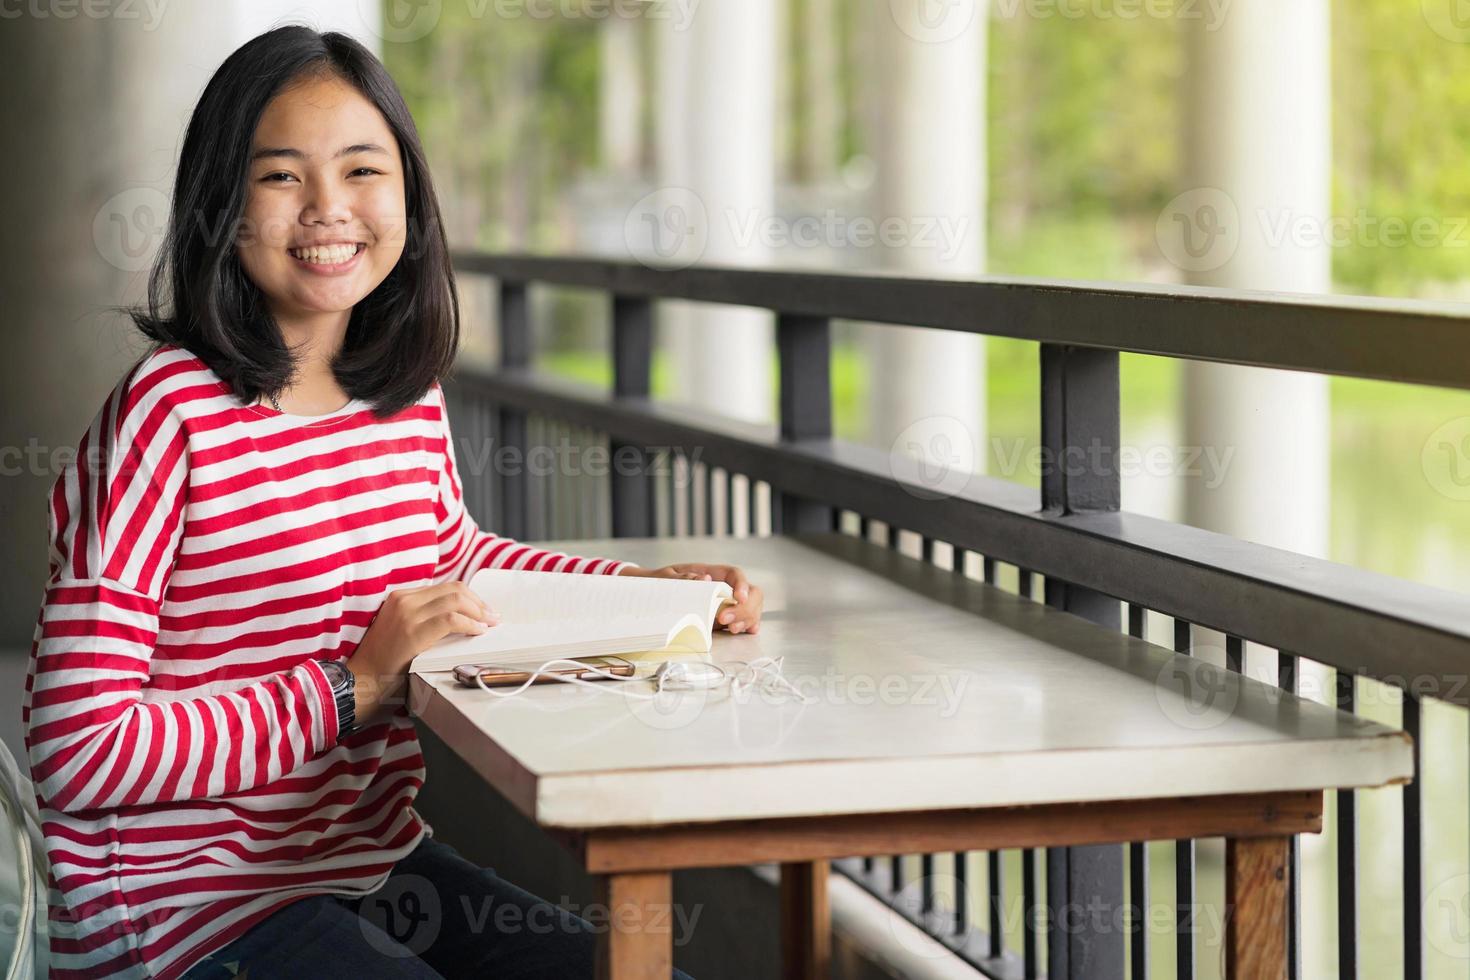 asiatisk studentflicka som sitter och ler och läser en bok i skolan foto